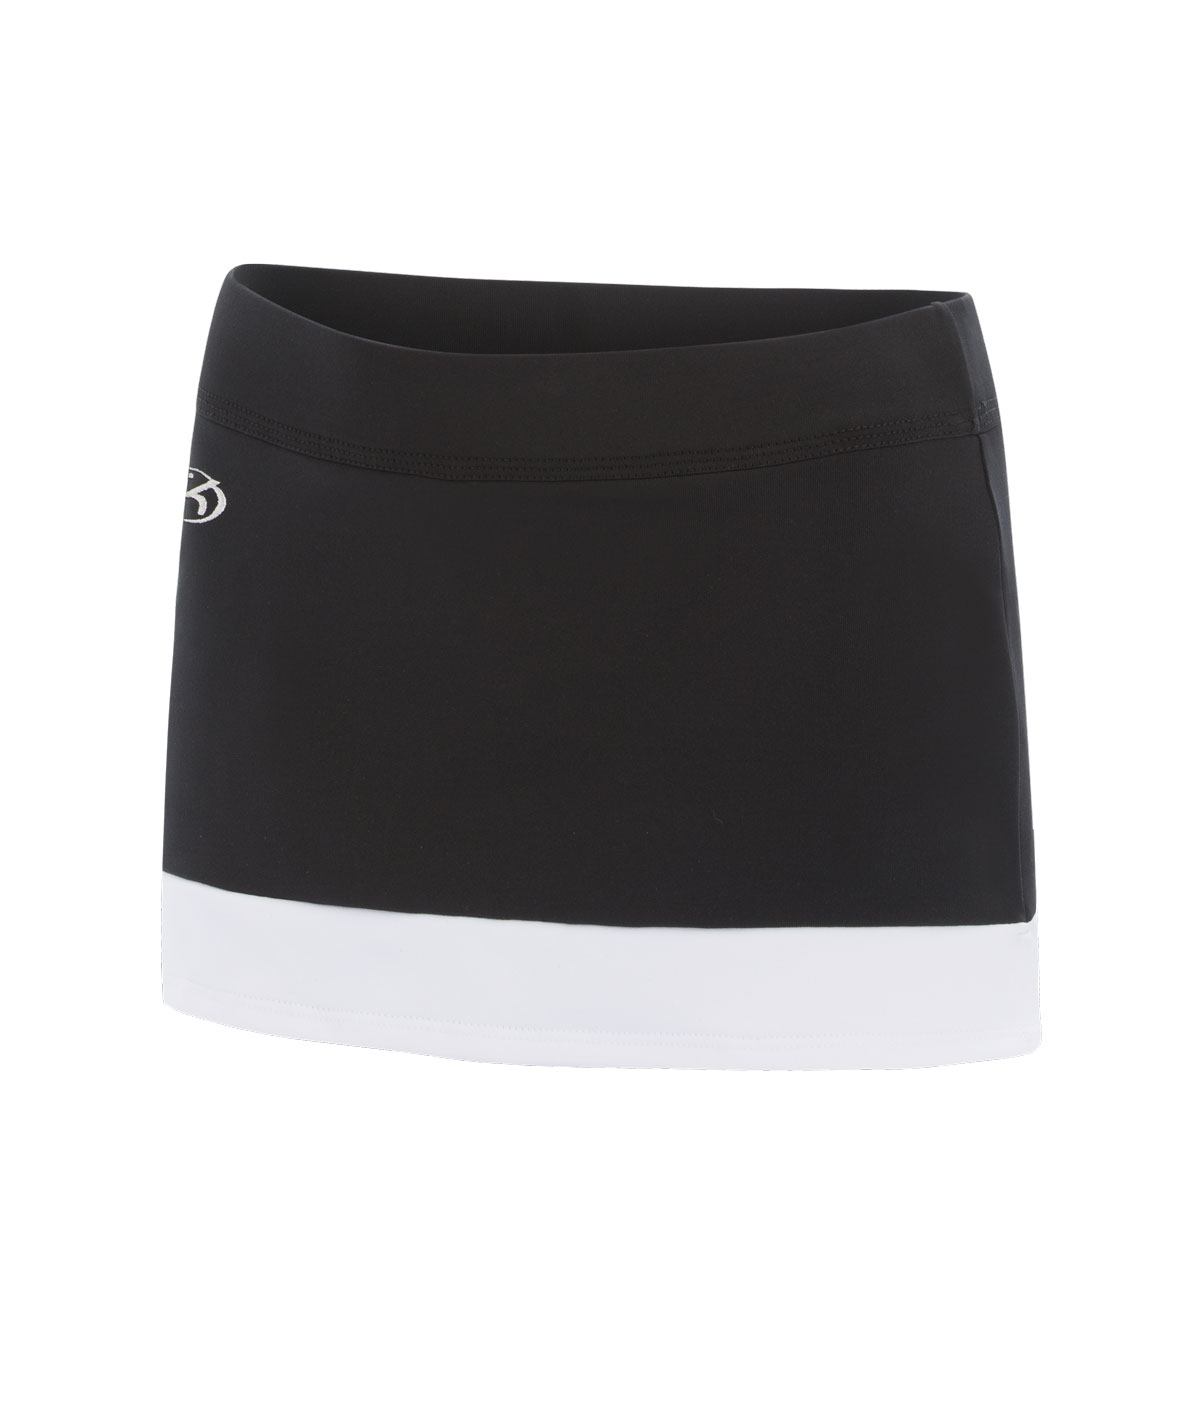 GK All Star Black Cheer Skirt with White Color Block Hem